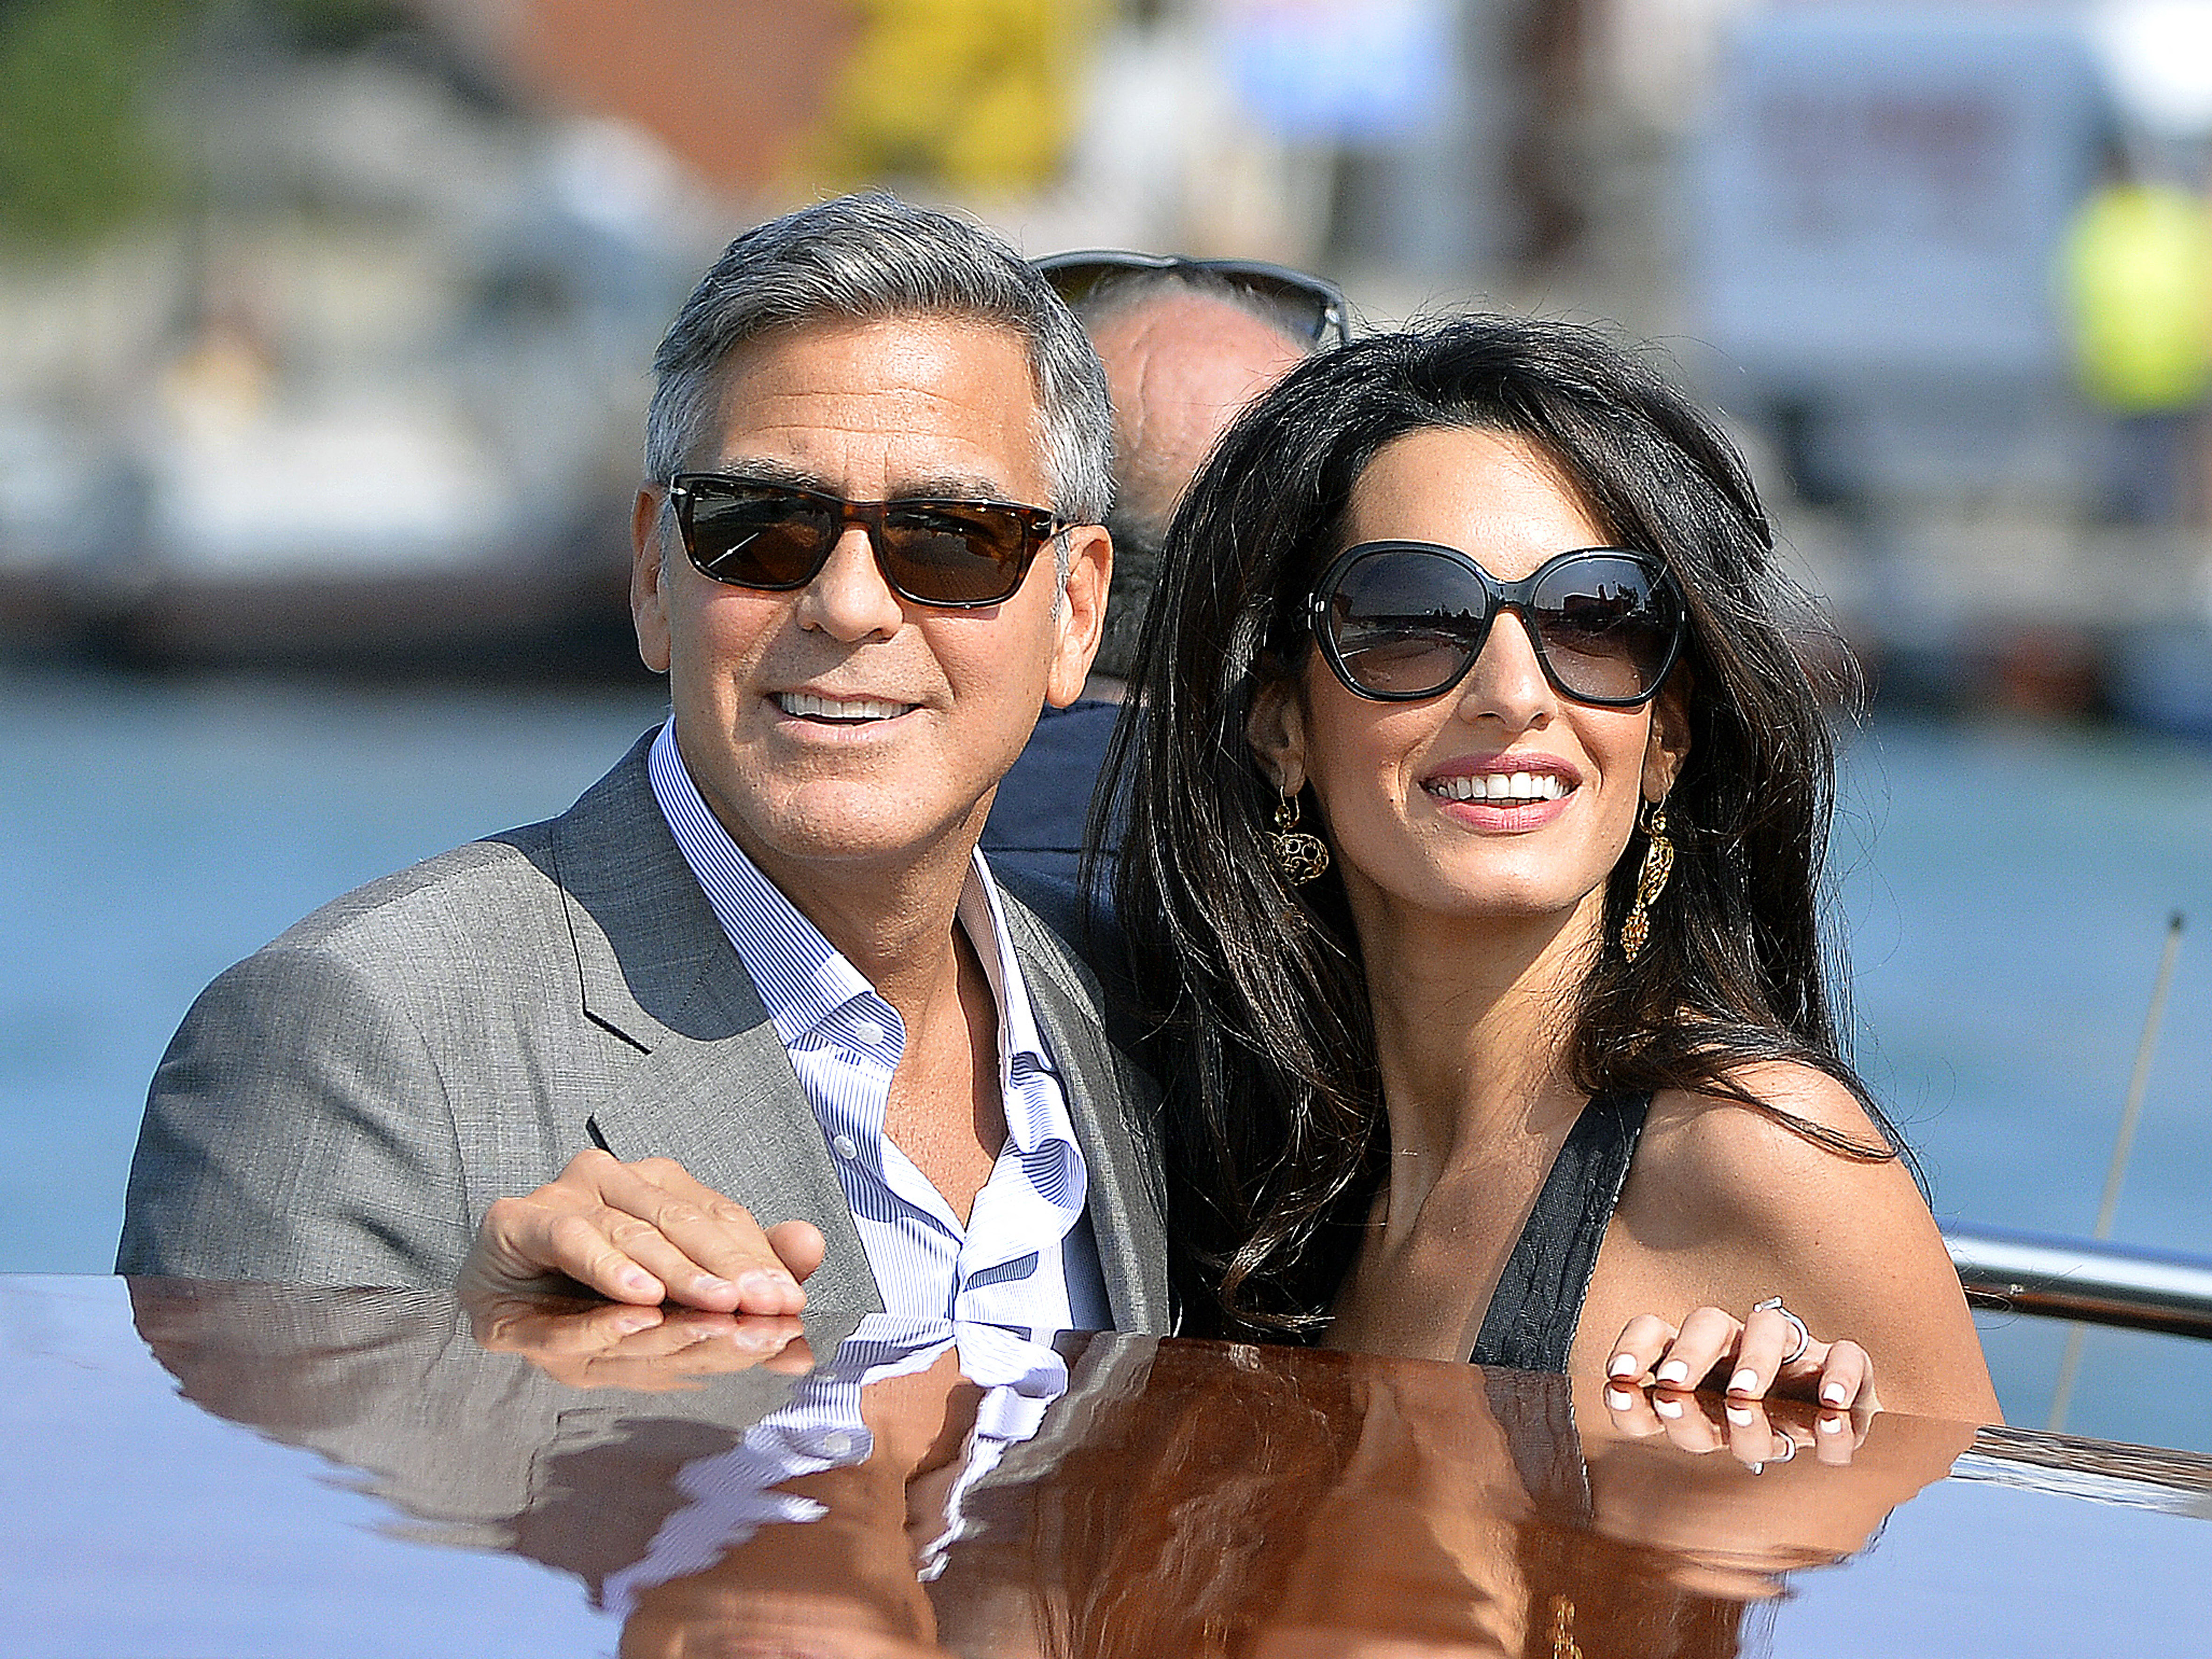 George Clooney et Amal Alamuddin photographiés sur un bateau taxi le 26 septembre 2014 à Venise, en France. | Source : Getty Images